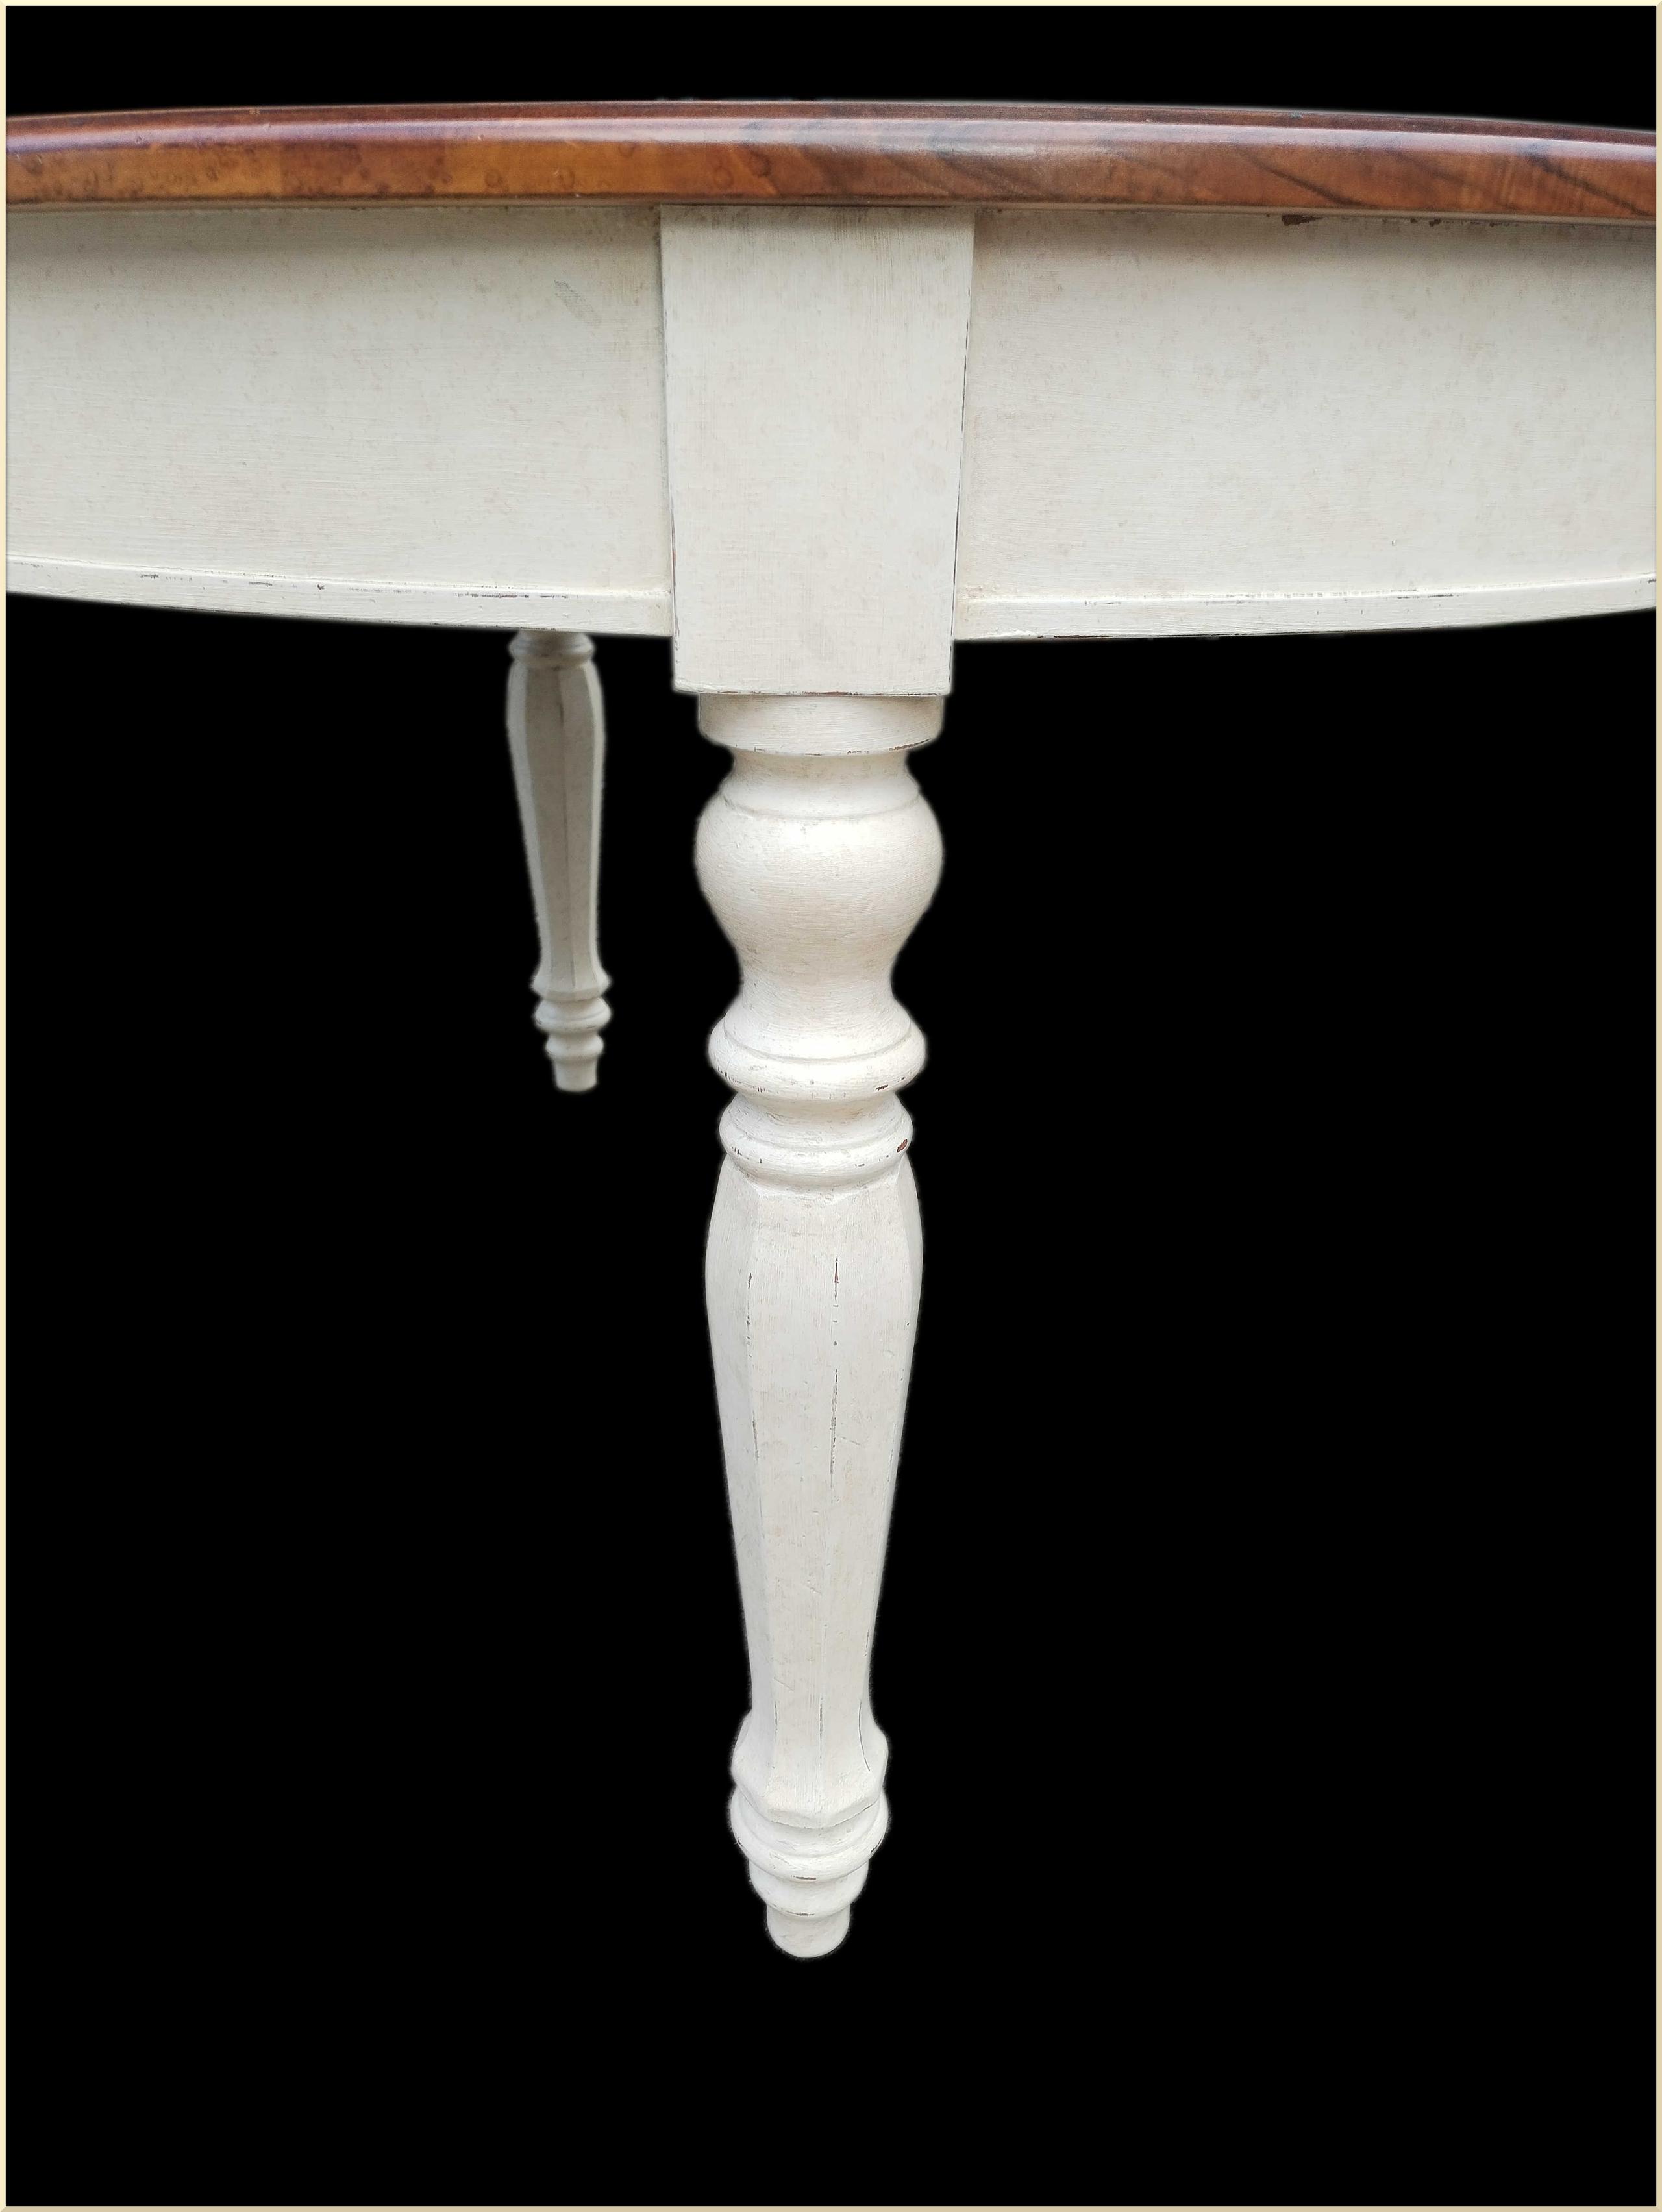 Tavolo ovale allungabile intarsiato in noce con base panna anticata